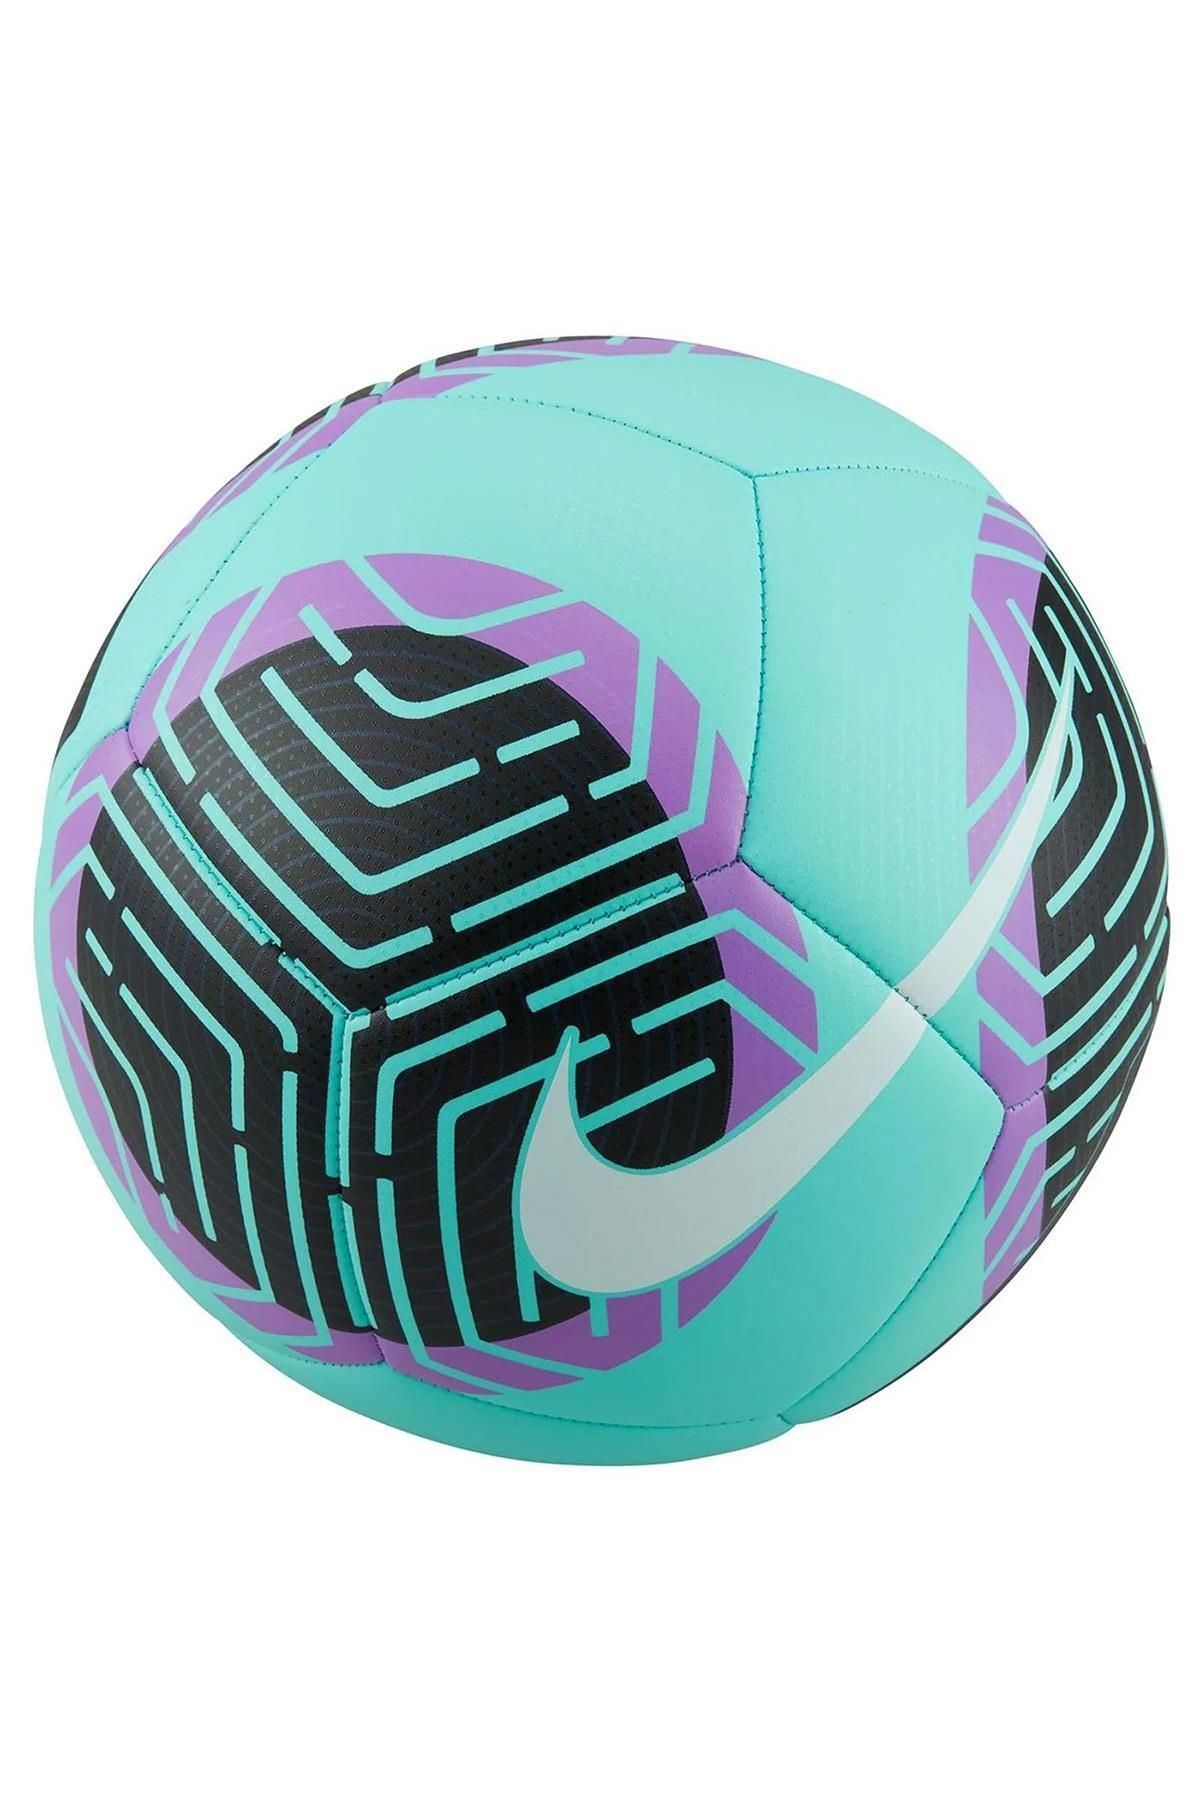 Nike 5 Numara Pitch Fb2978-354 Yeşil Futbol Topu Suni / Gerçek Çim Pompa dahil değildir Lacivert